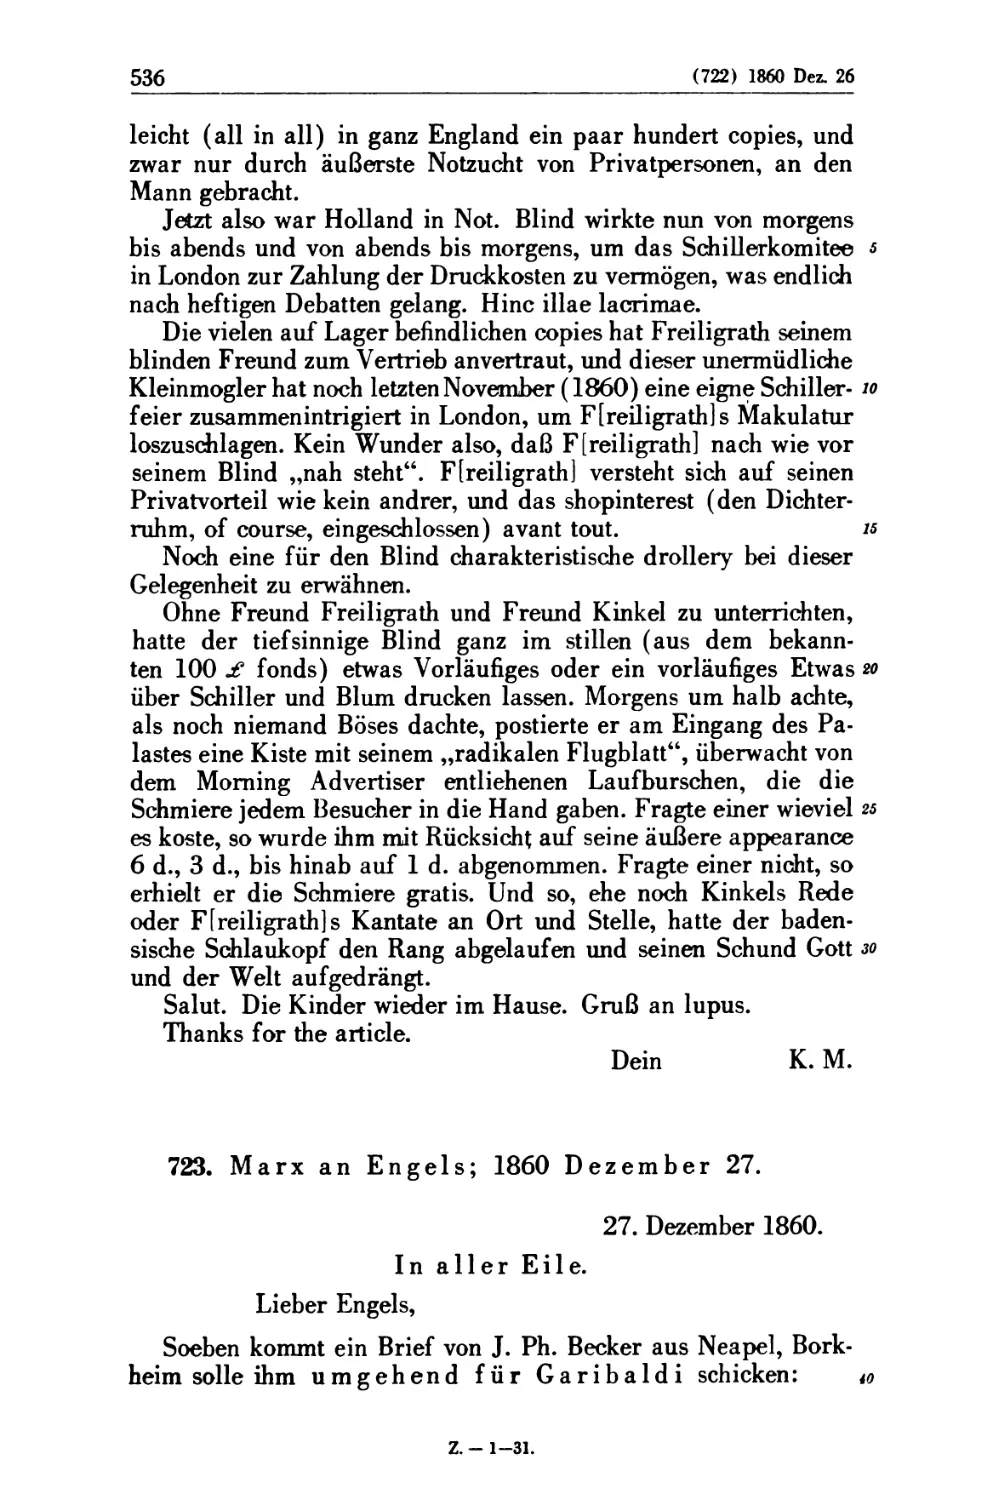 723. Marx an Engels; 1860 Dezember 27